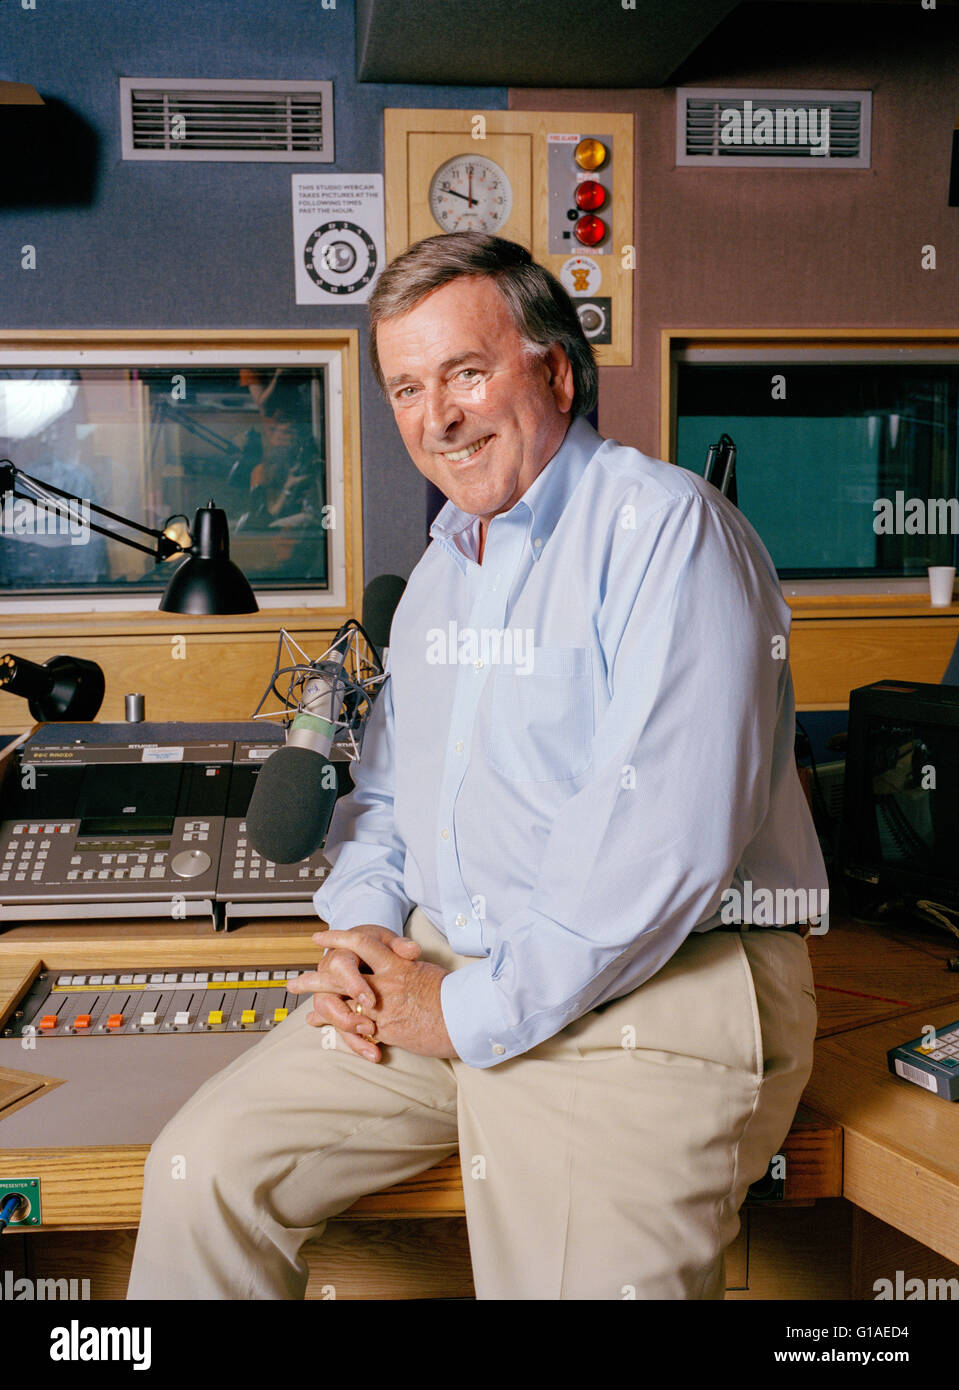 Sir Terry Wogan, radio et de la télévision irlandaise photographié dans la  BBC Radio 2 studios, Londres, Angleterre, Royaume-Uni Photo Stock - Alamy